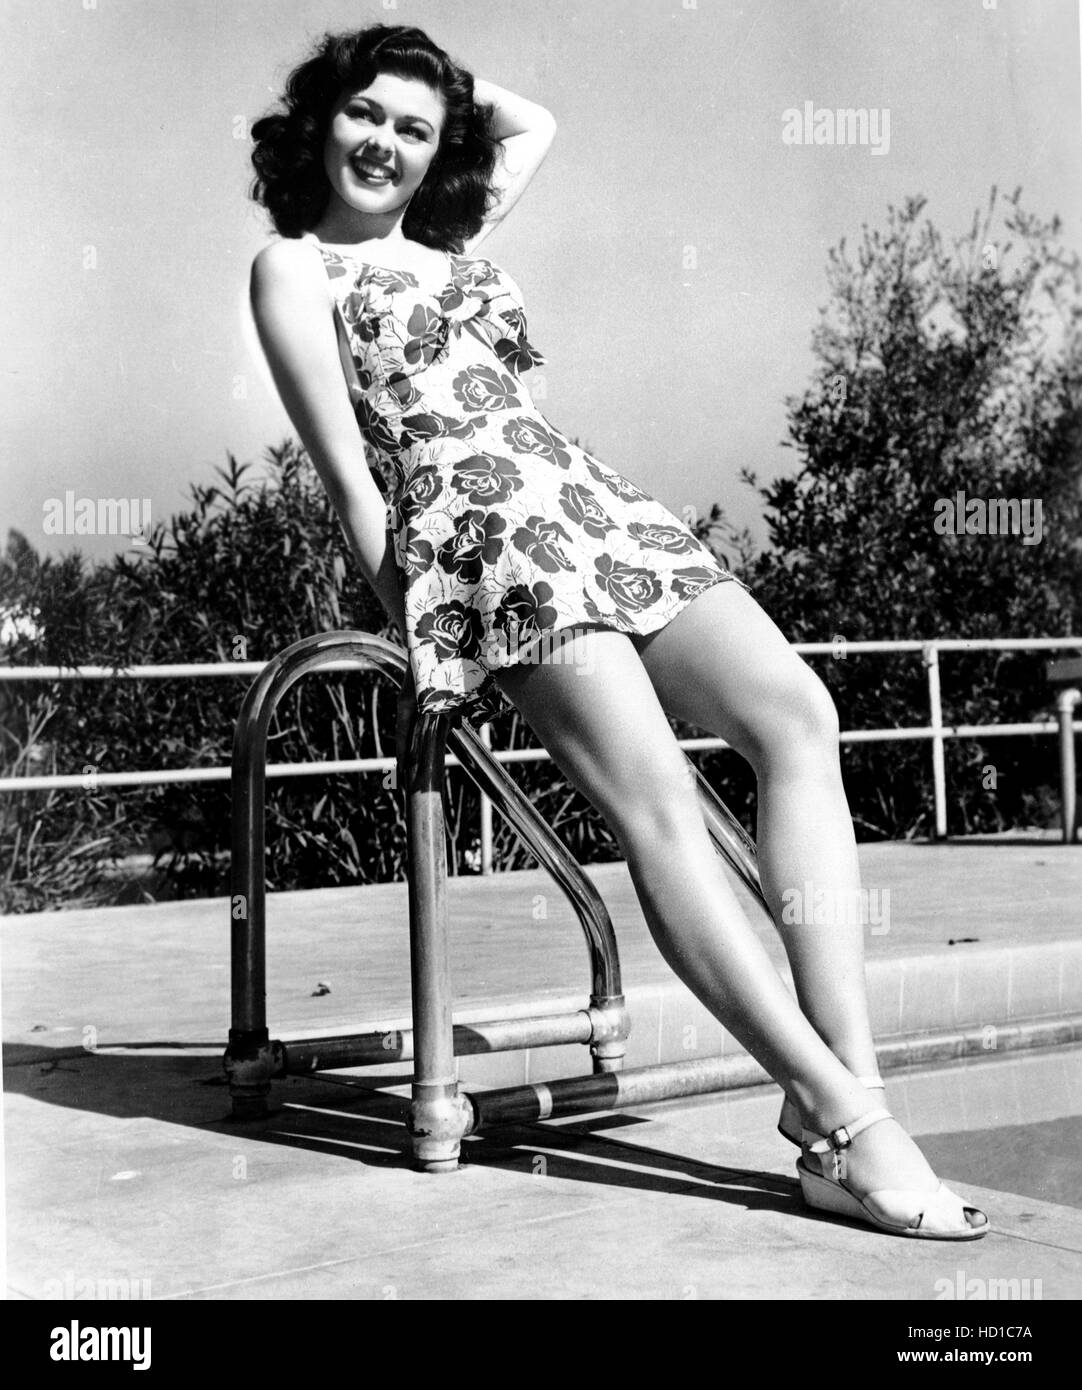 Louise LaPlanche, 1944 Stock Photo - Alamy